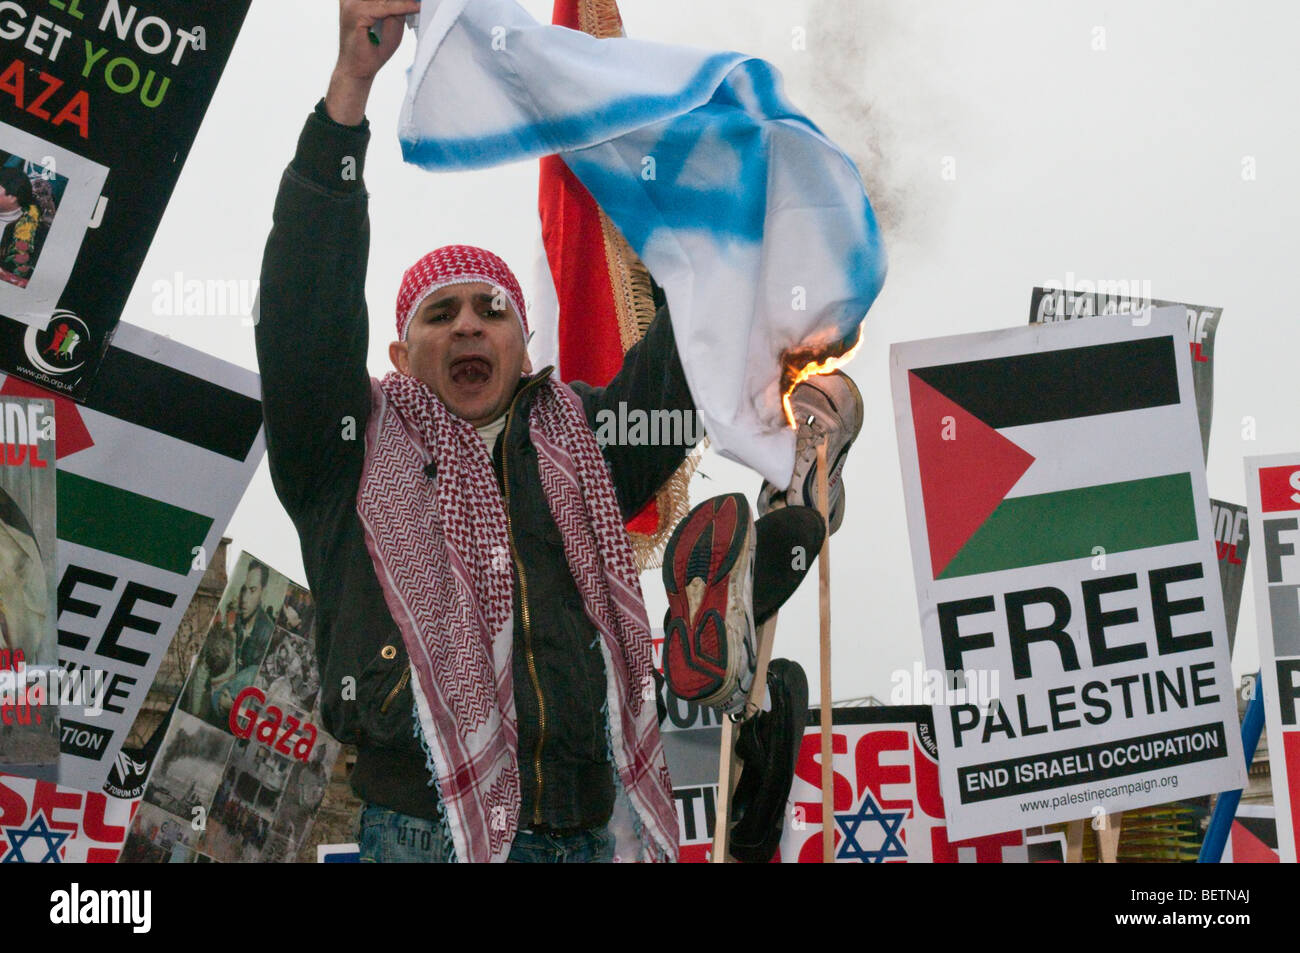 Gaza - 1000 morts et rien dit de démonstration. Homme avec bonnet et écharpe palestinienne brut burns drapeau israélien. Trafalgar Square Banque D'Images